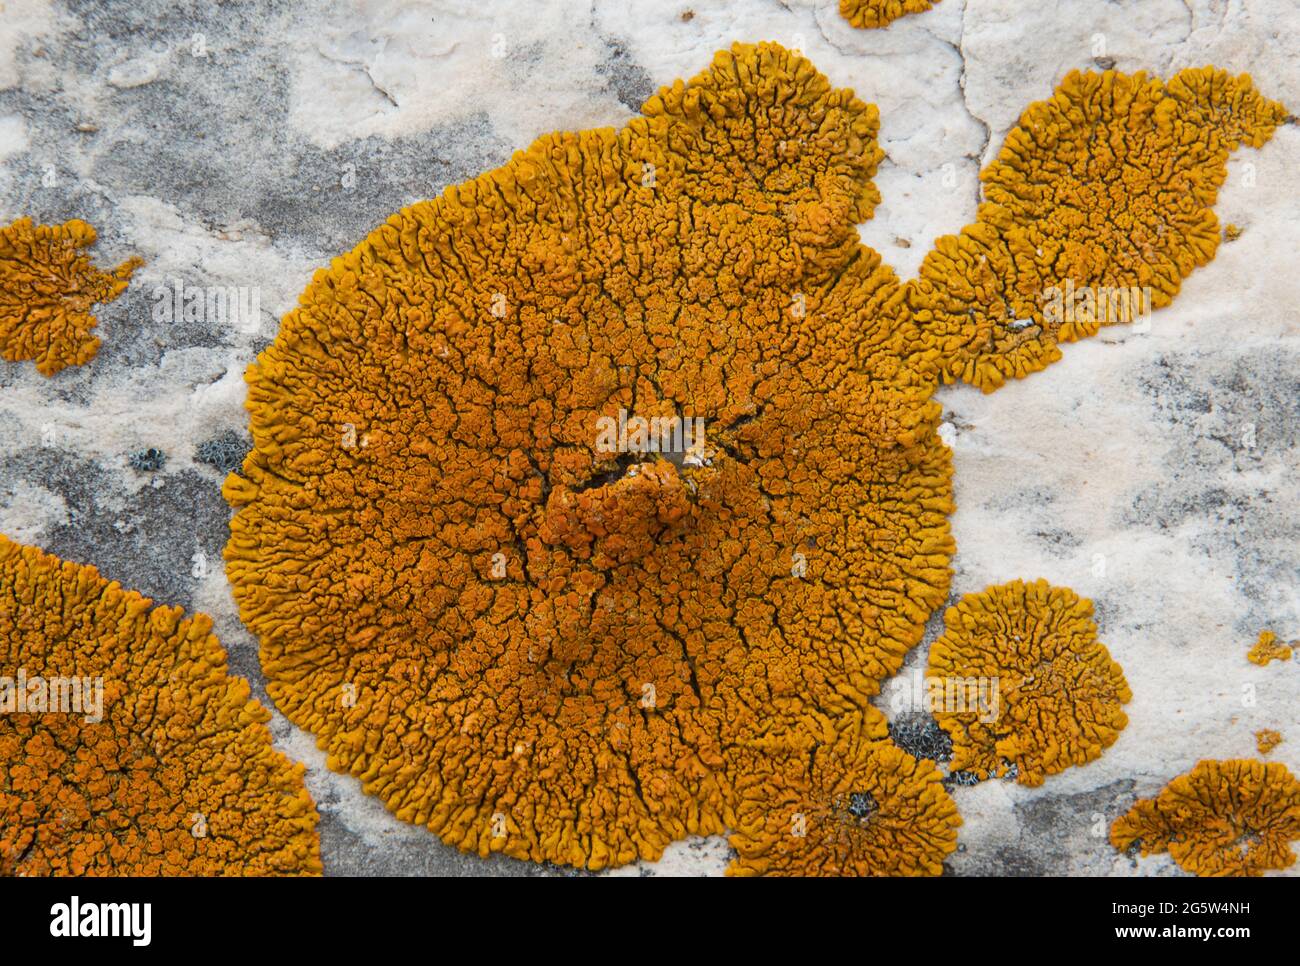 Bright orange circular lichen, probably Orange lichen or Xanthoria calcicola, on white dolomite rock Stock Photo